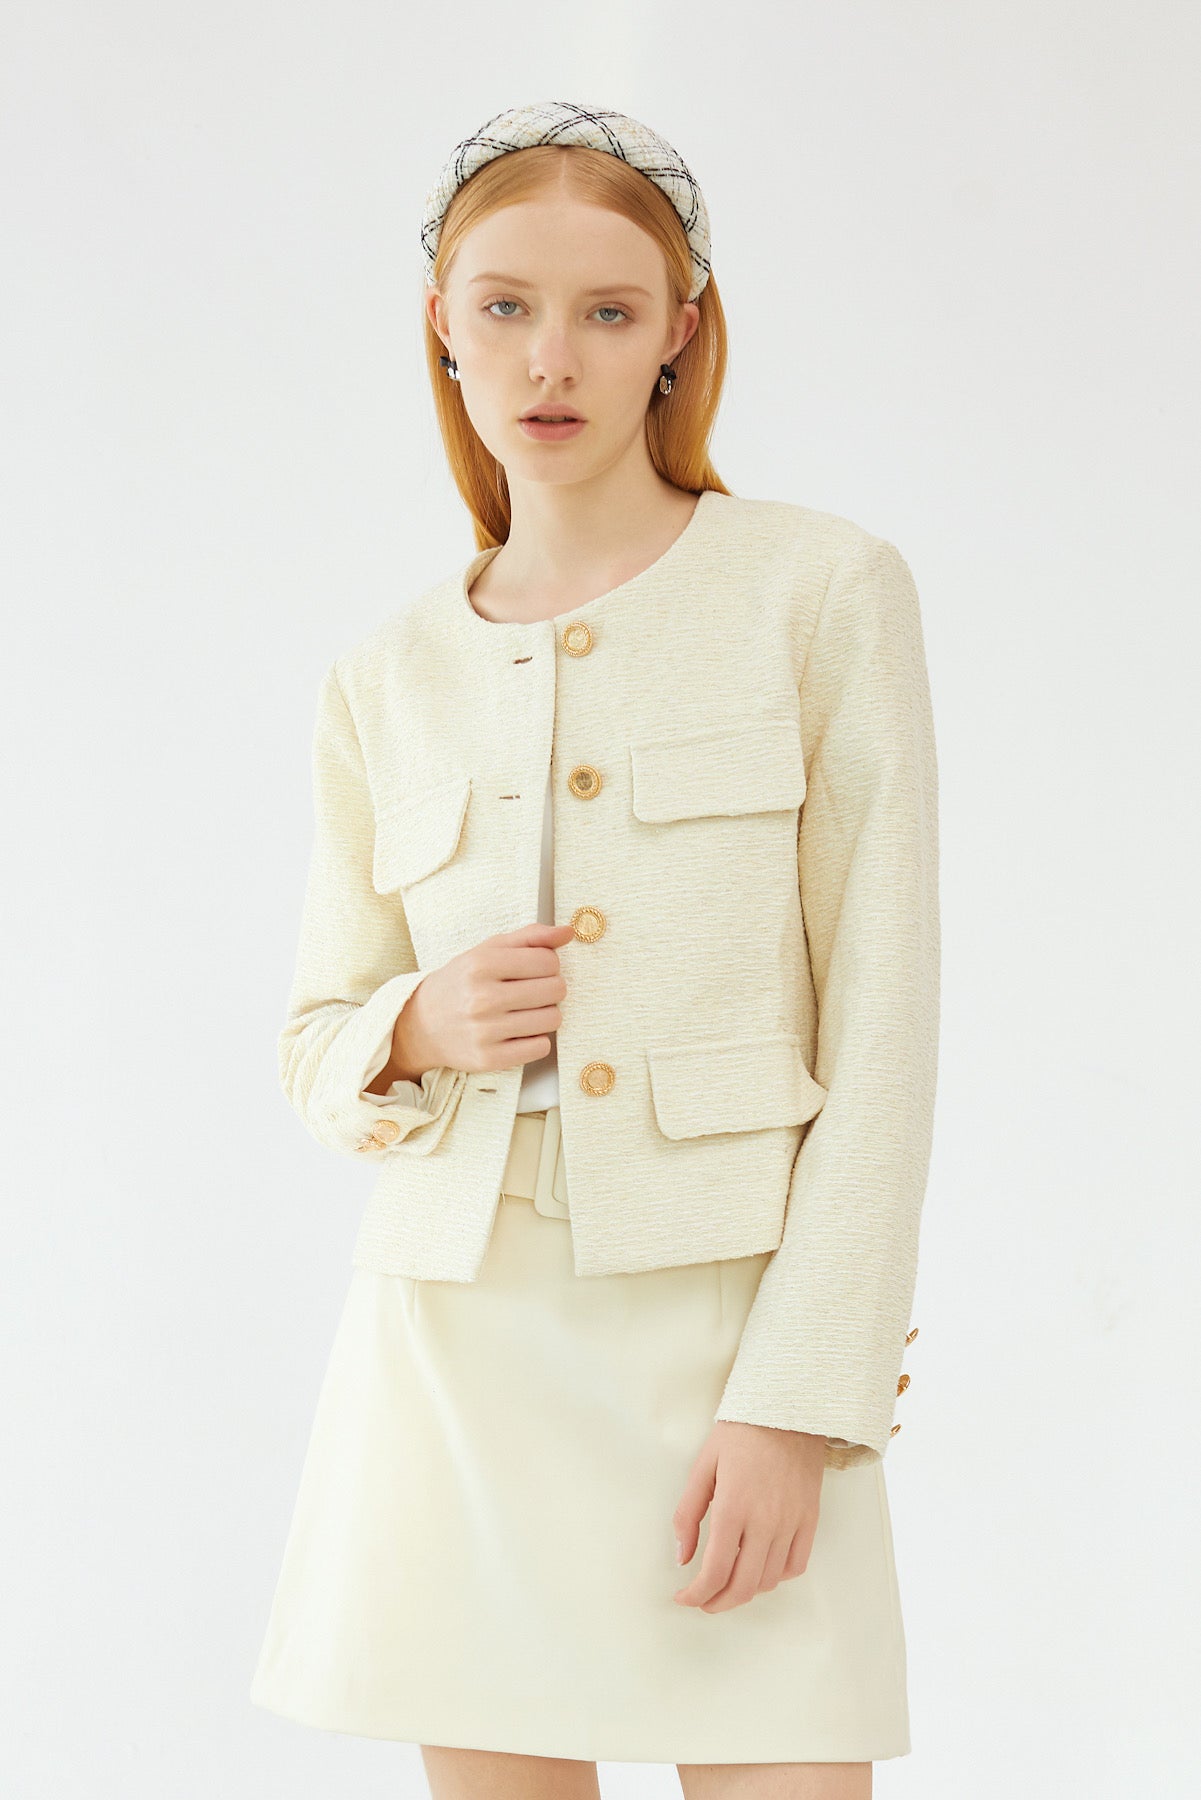 CHANEL Tweed Jacket 06 Model Size 36